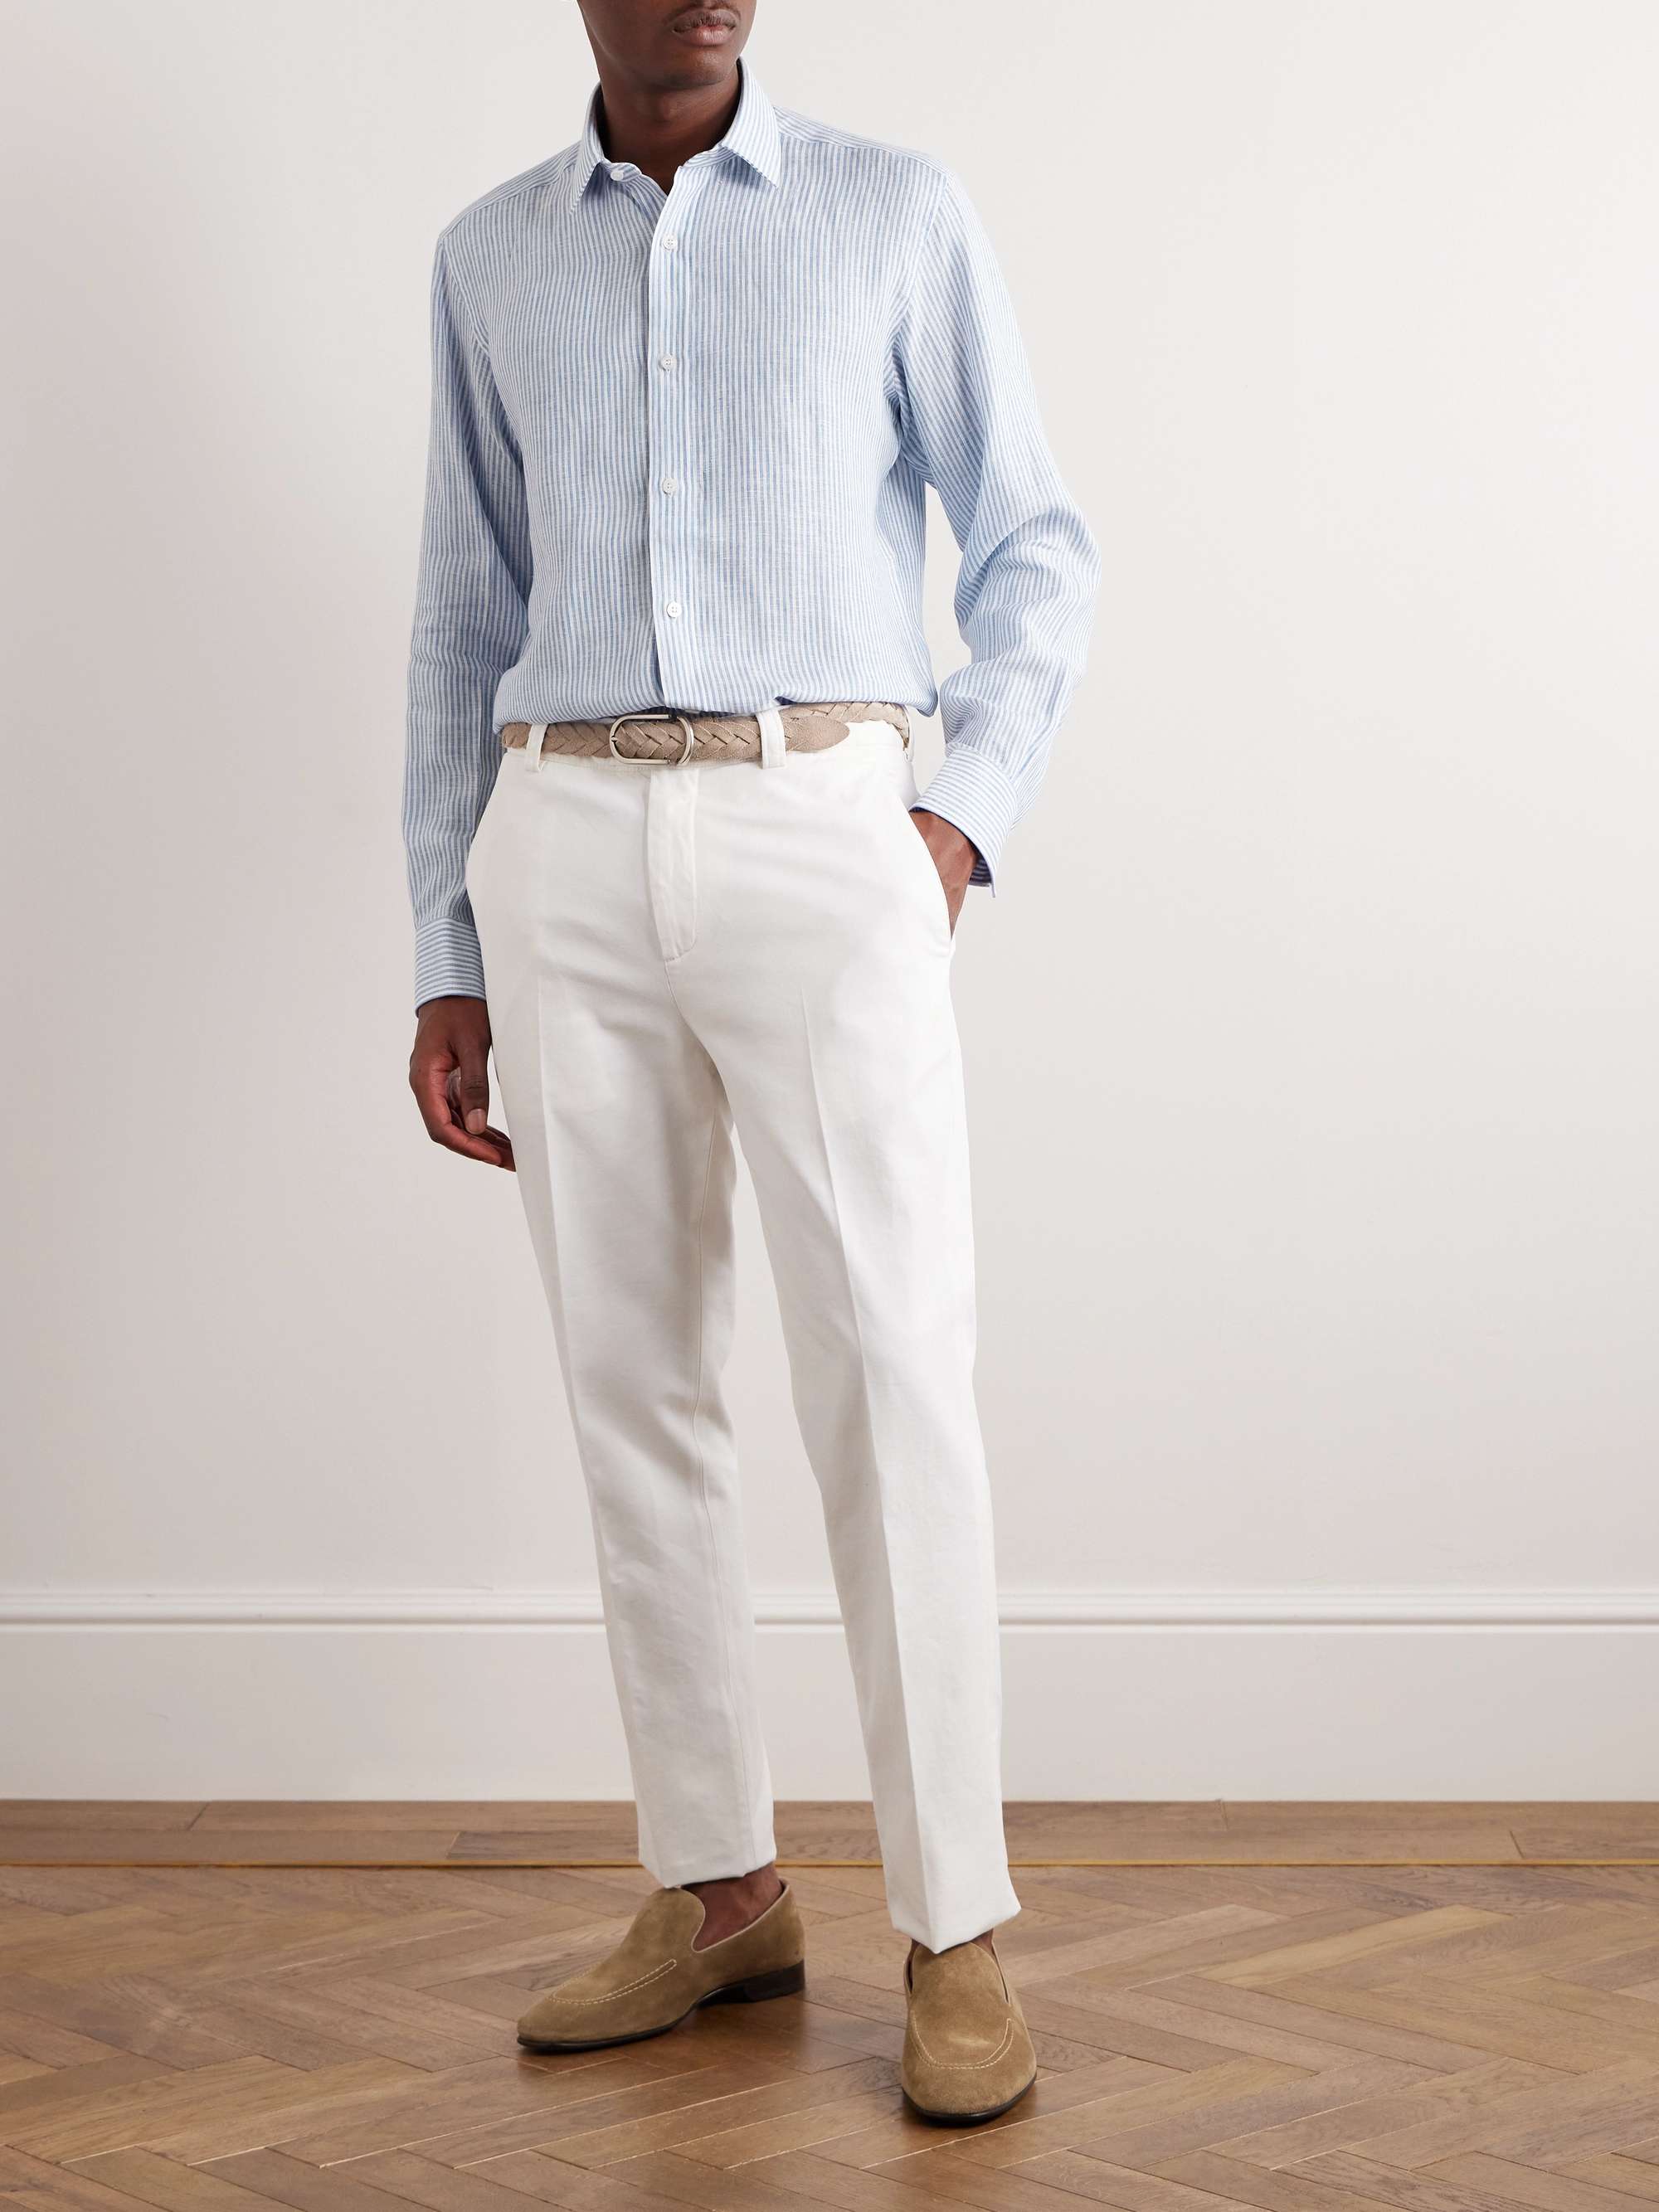 CHARVET Striped Linen Shirt for Men | MR PORTER